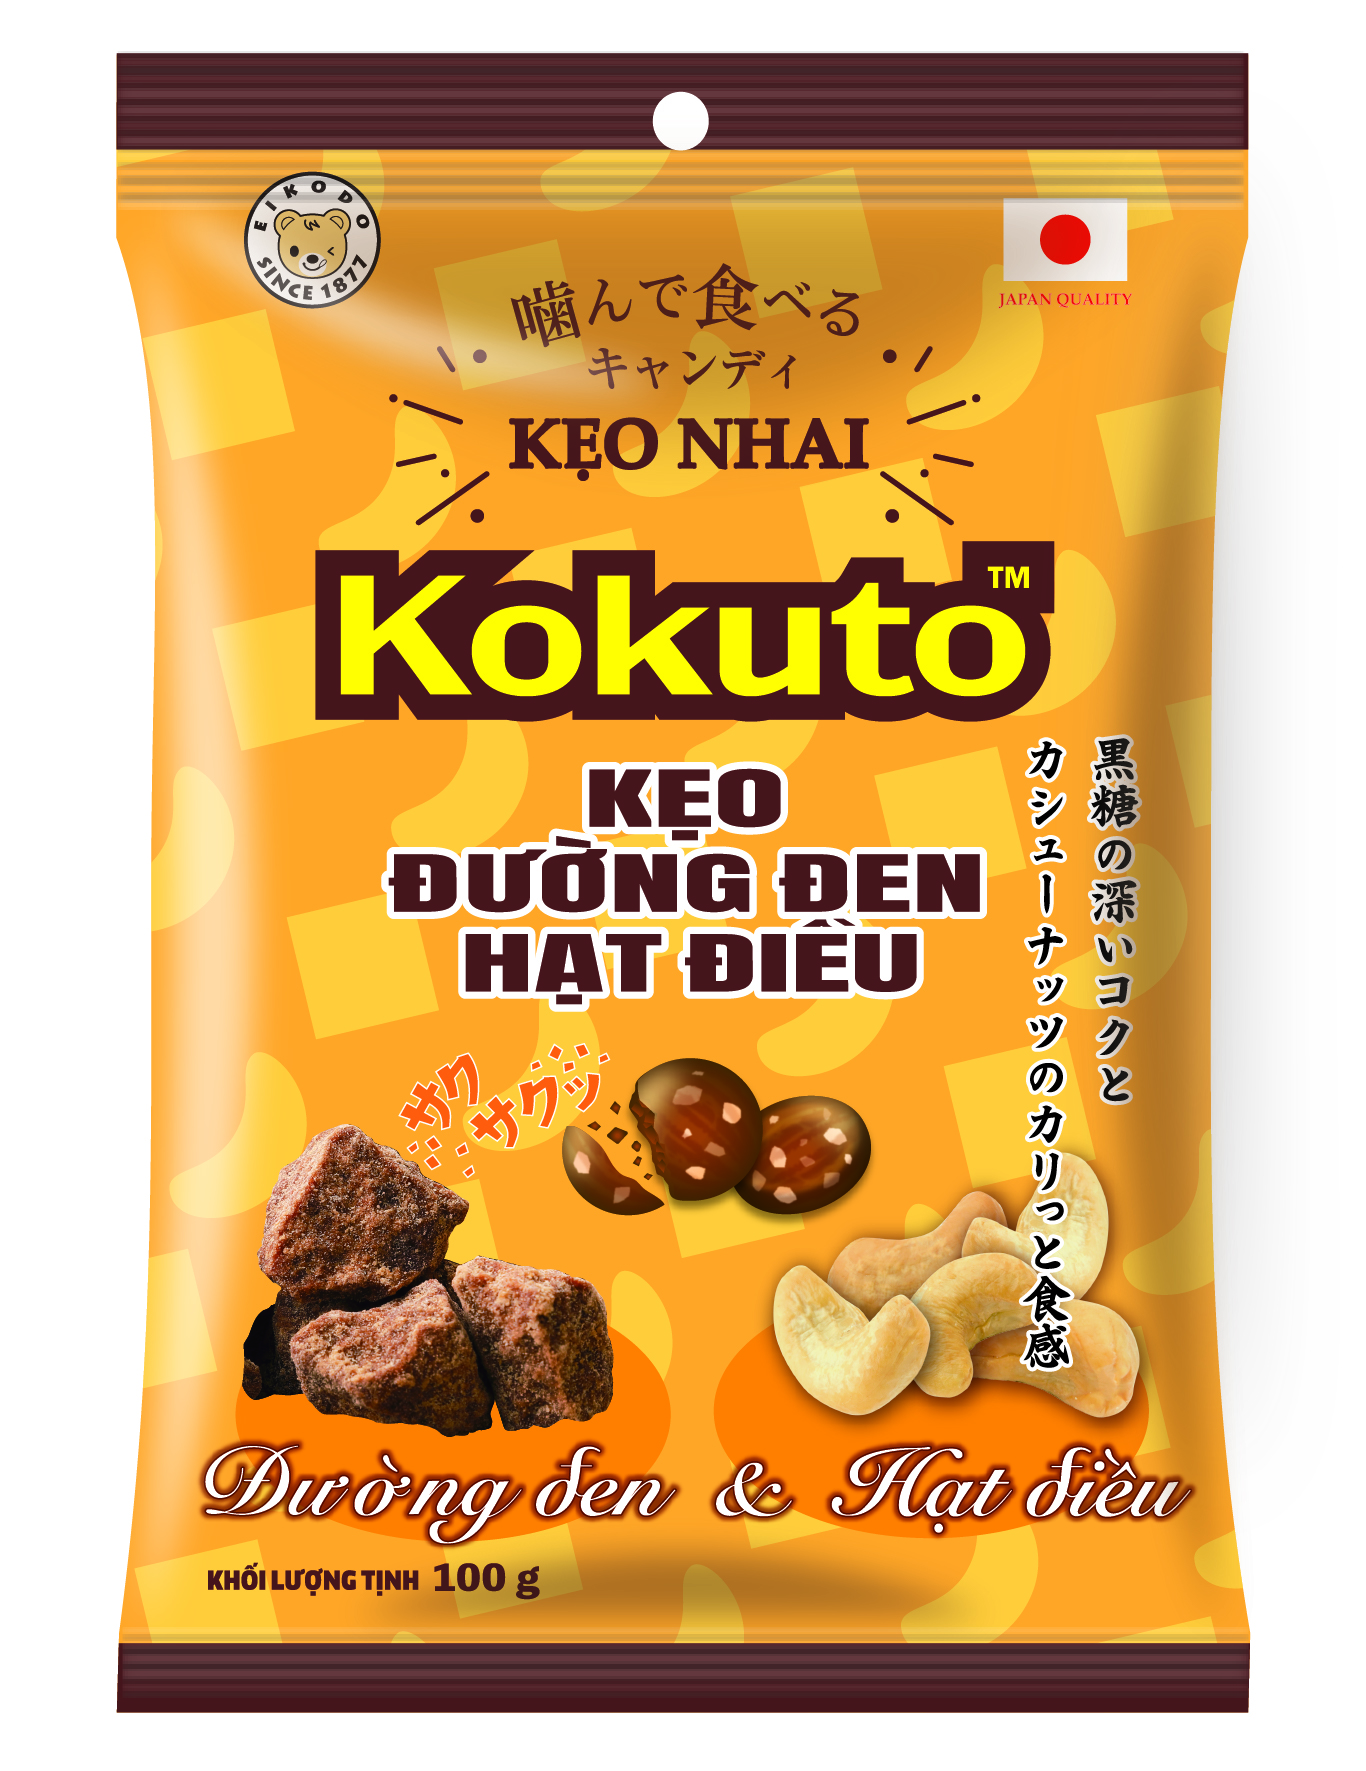 Diện mạo mới - Bao bì kẹo đường đen hạt điều Kokuto 100g